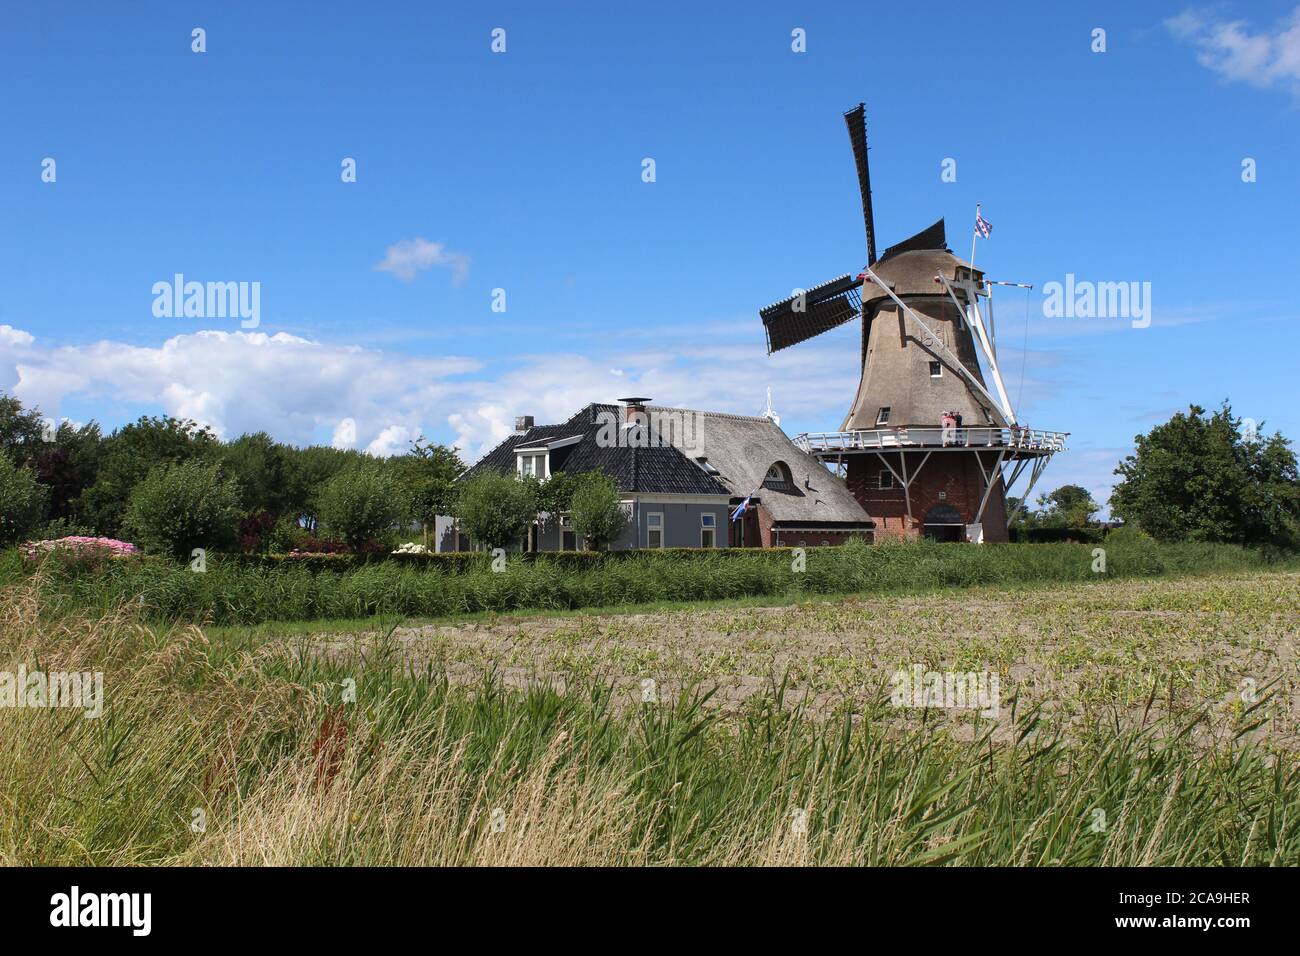 PAESENS, NIEDERLANDE, 21. JULI 2020: Blick auf Windmill, (Molen de Hond), ein bekanntes Wahrzeichen in der Nähe von Paesens in Friesland. Es handelt sich um einen restaurierten Windm Stockfoto